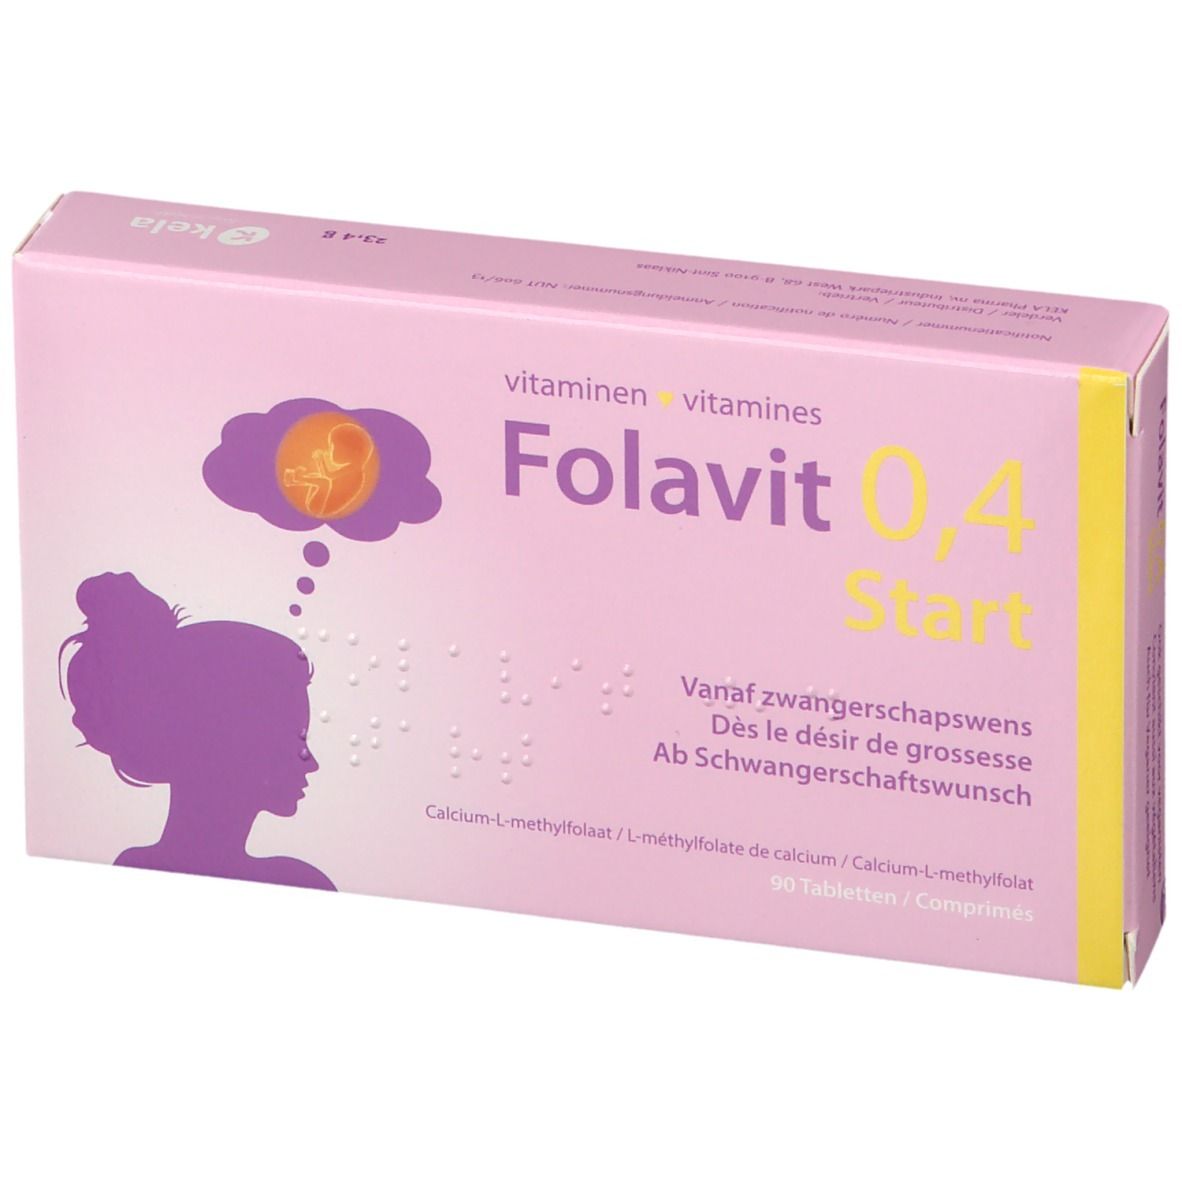 Folavit 0,4 Start